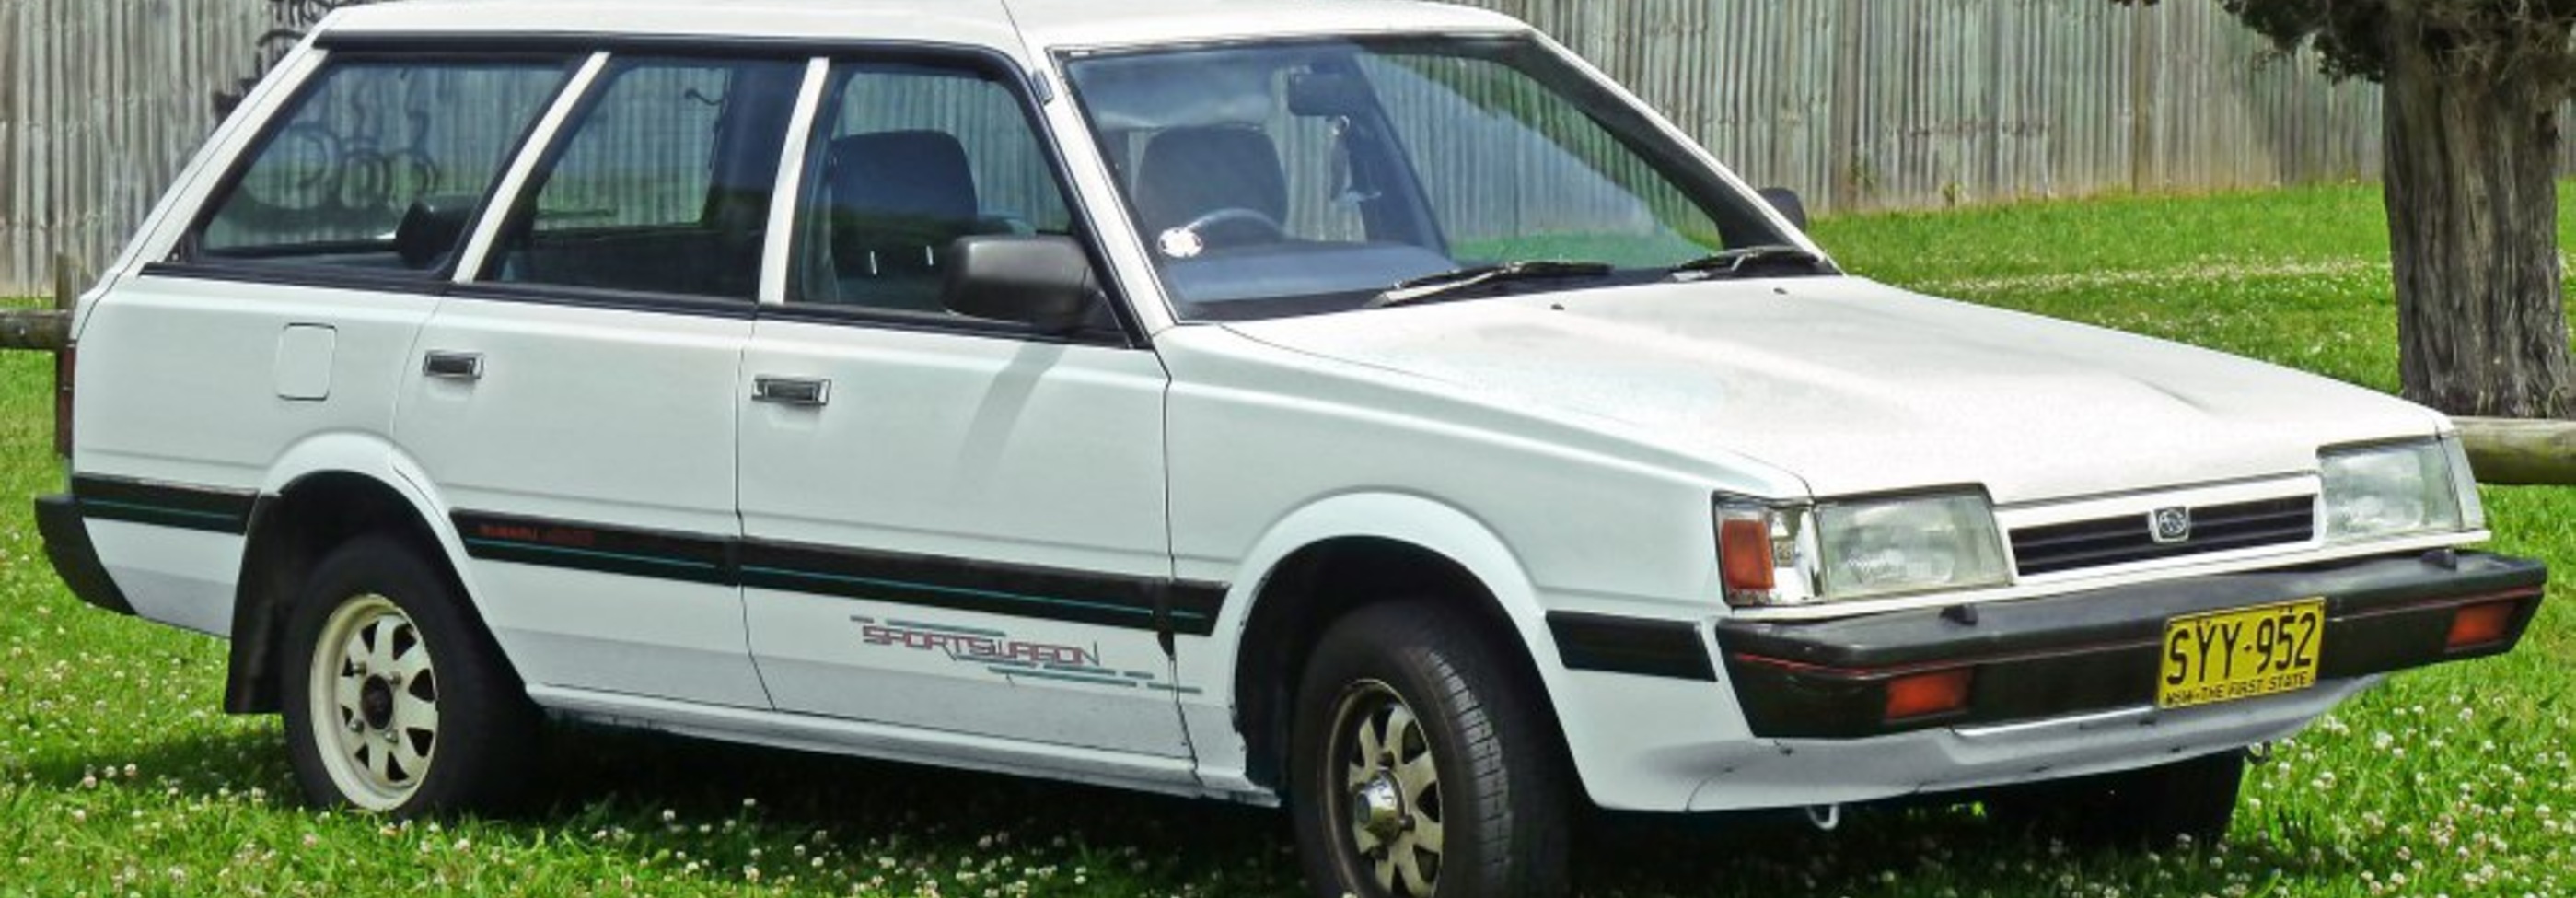 Subaru Leone III Station Wagon 1800 Super Turbo 4WD (136 Hp) 1984, 1985, 1986, 1987, 1988, 1989, 1990 